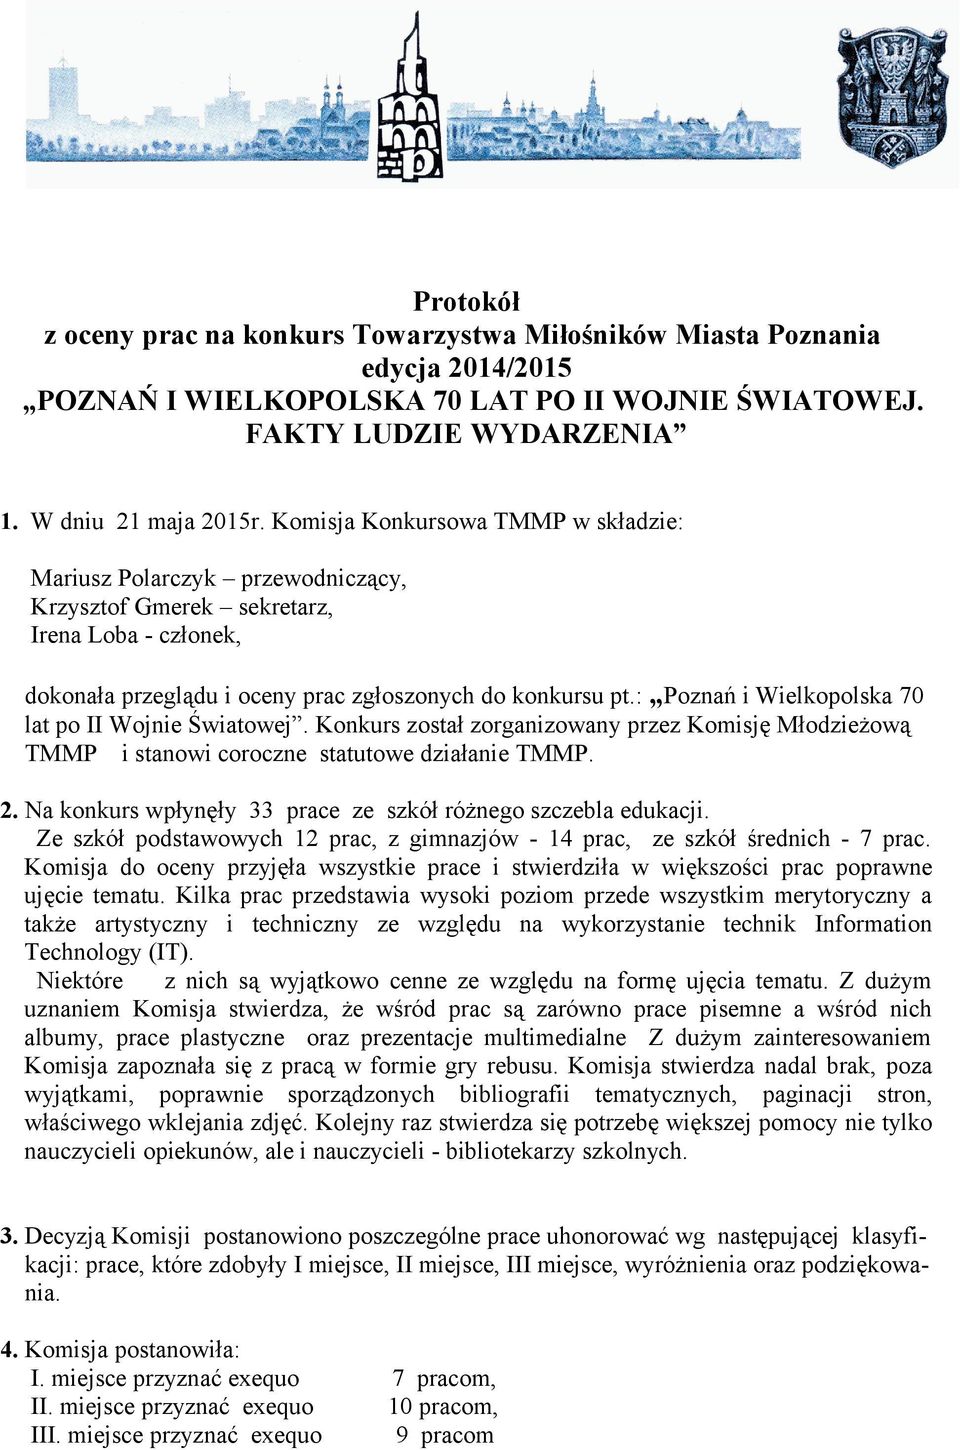 : Poznań i Wielkopolska 70 lat po II Wojnie Światowej. Konkurs został zorganizowany przez Komisję Młodzieżową TMMP i stanowi coroczne statutowe działanie TMMP. 2.